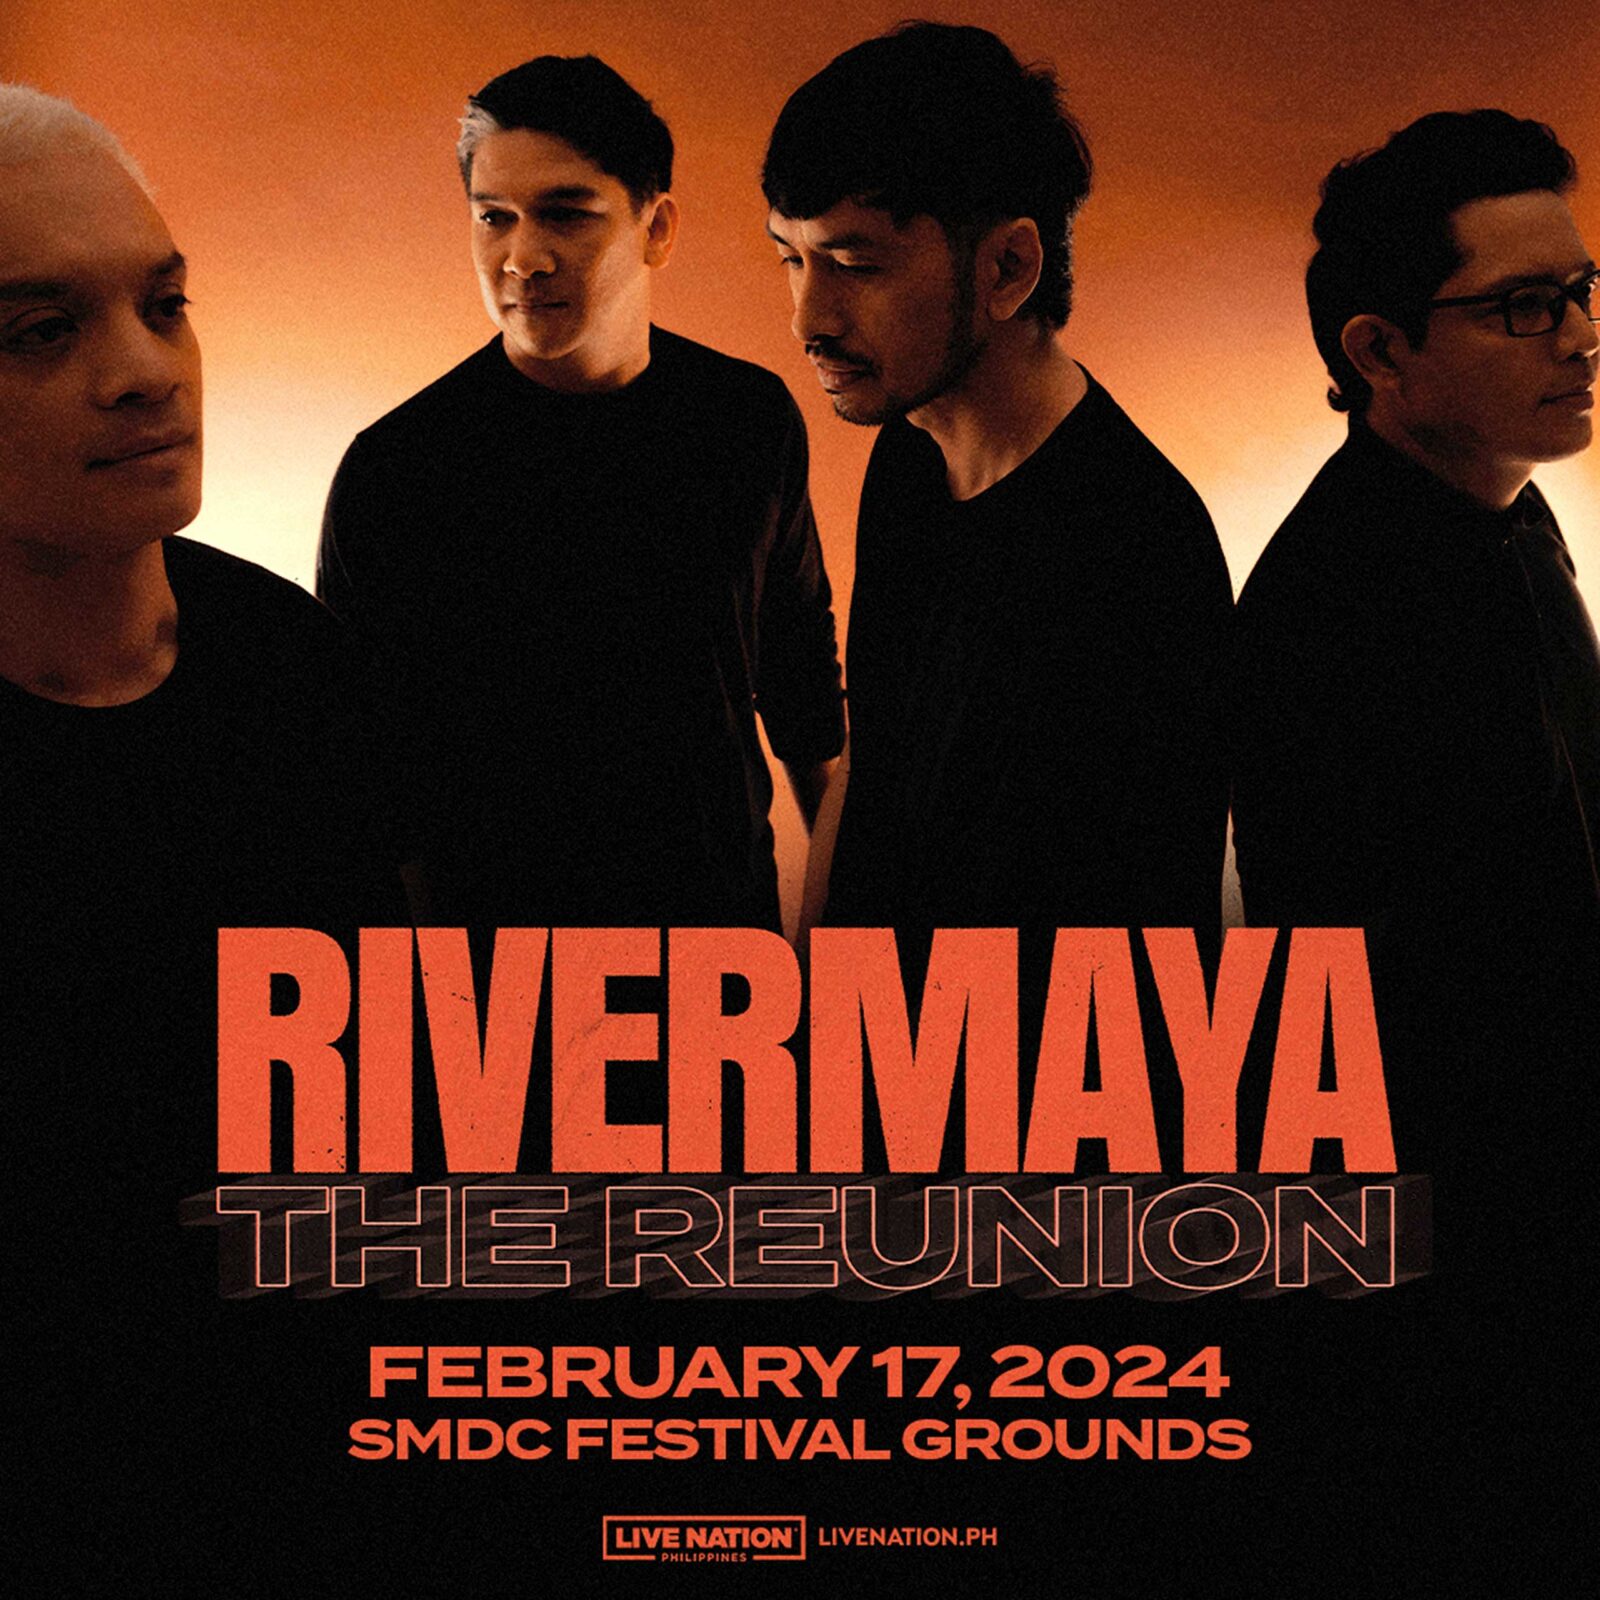 Rivermaya reunion concert poster